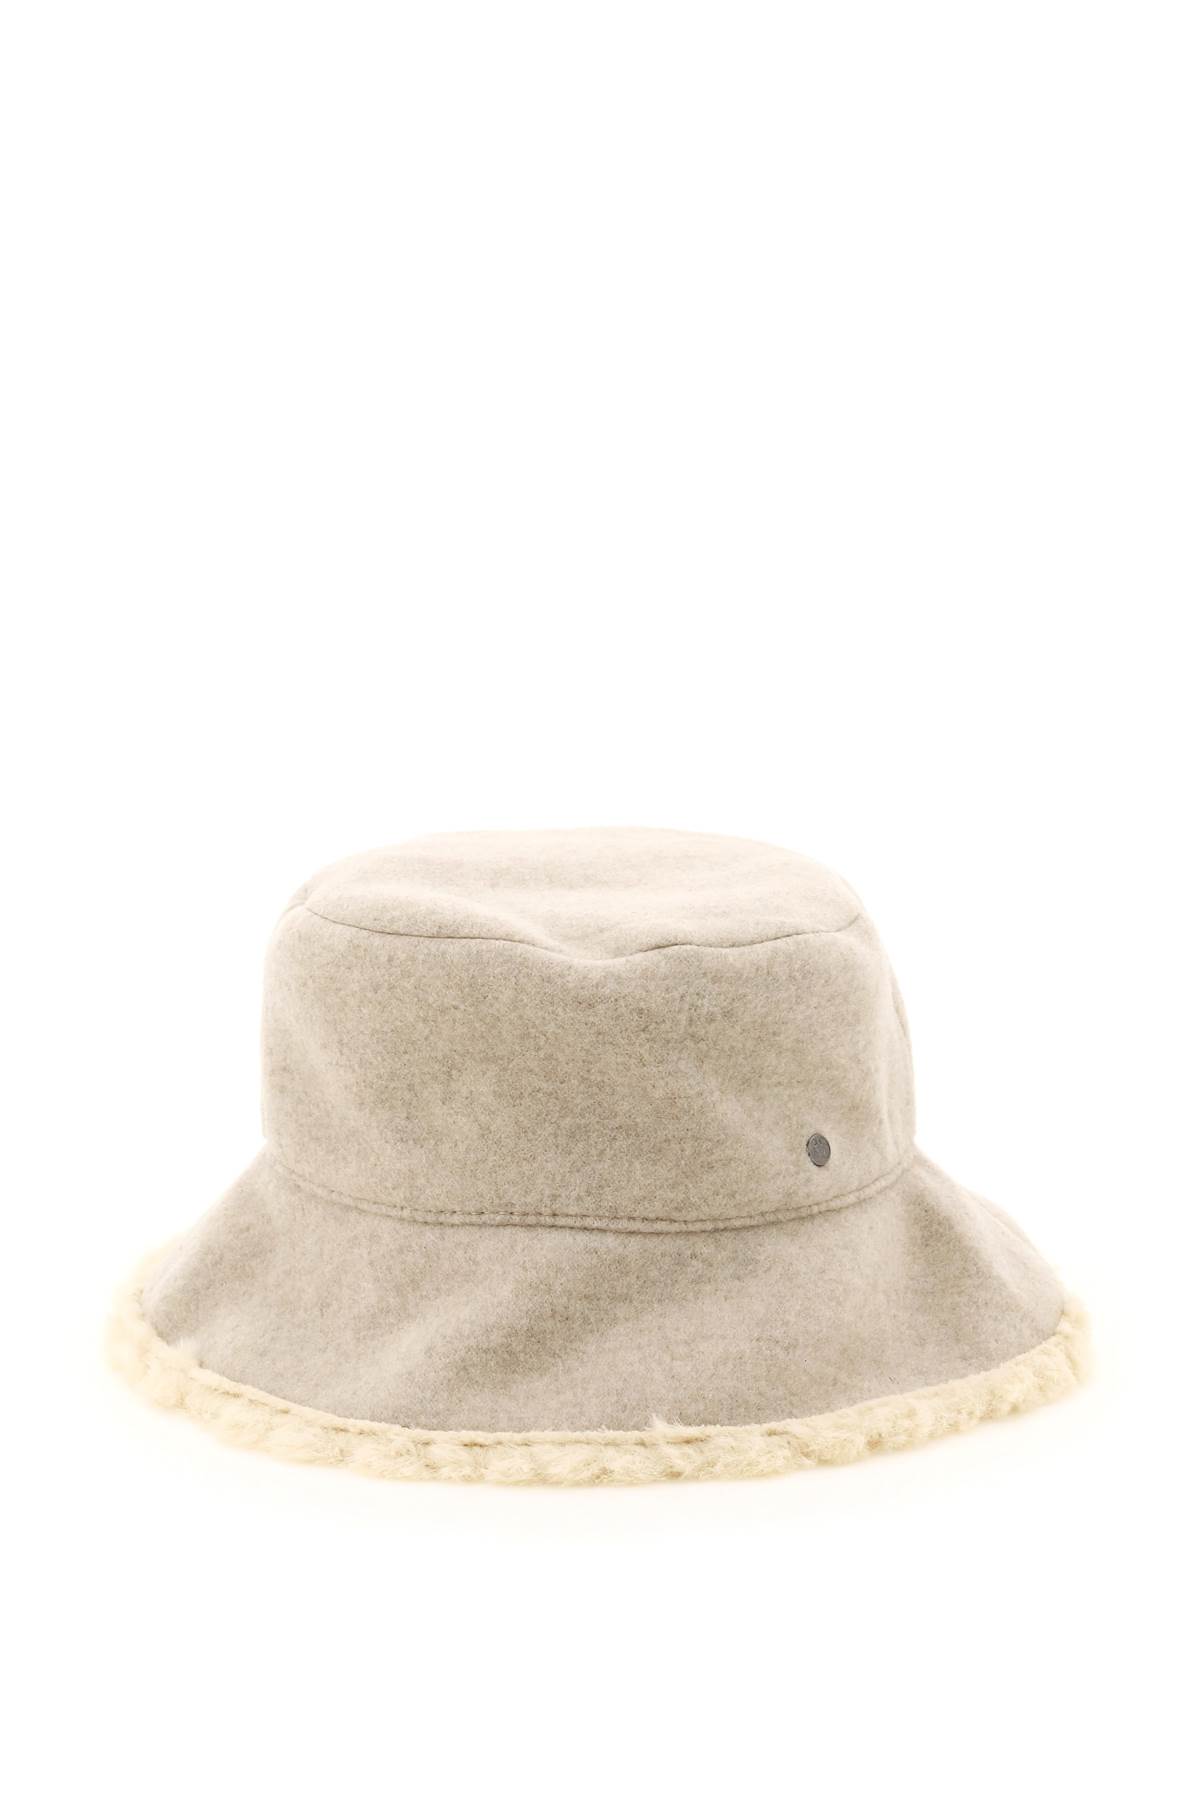 Maison Michel Angele Bucket Hat